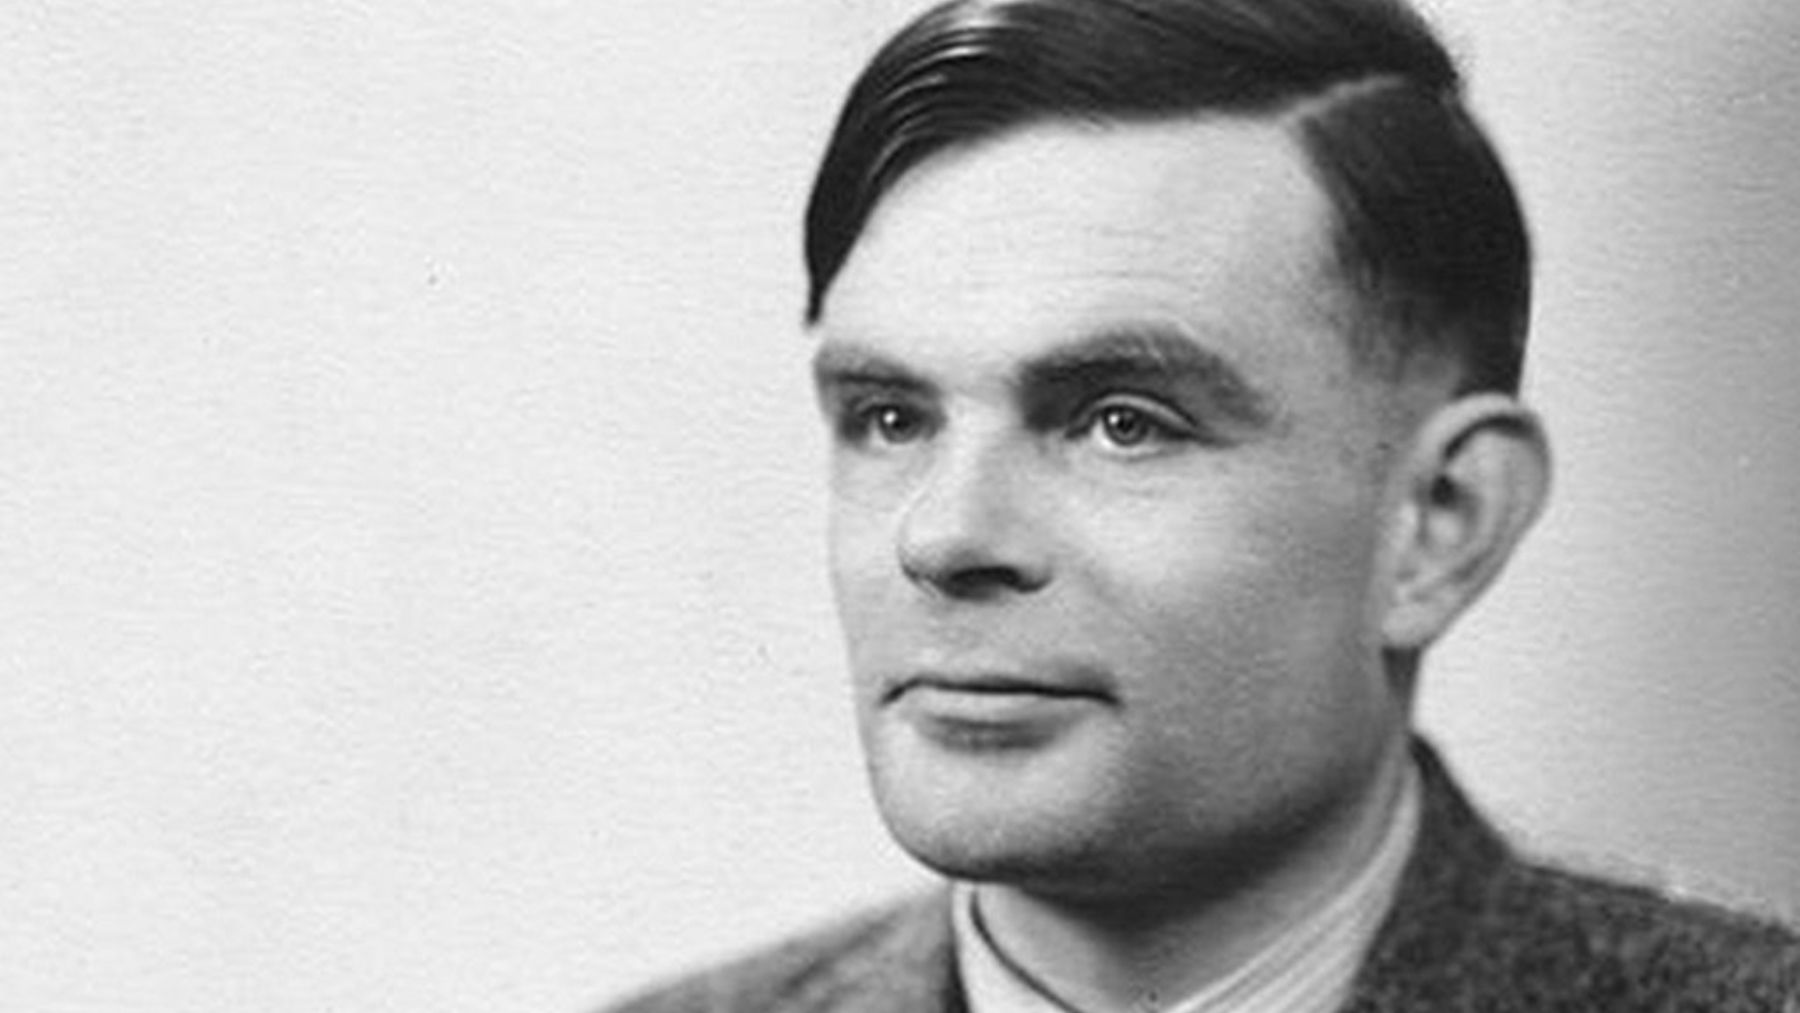 Alan Turing bénéficiera d’un nouveau billet de £50 à son image